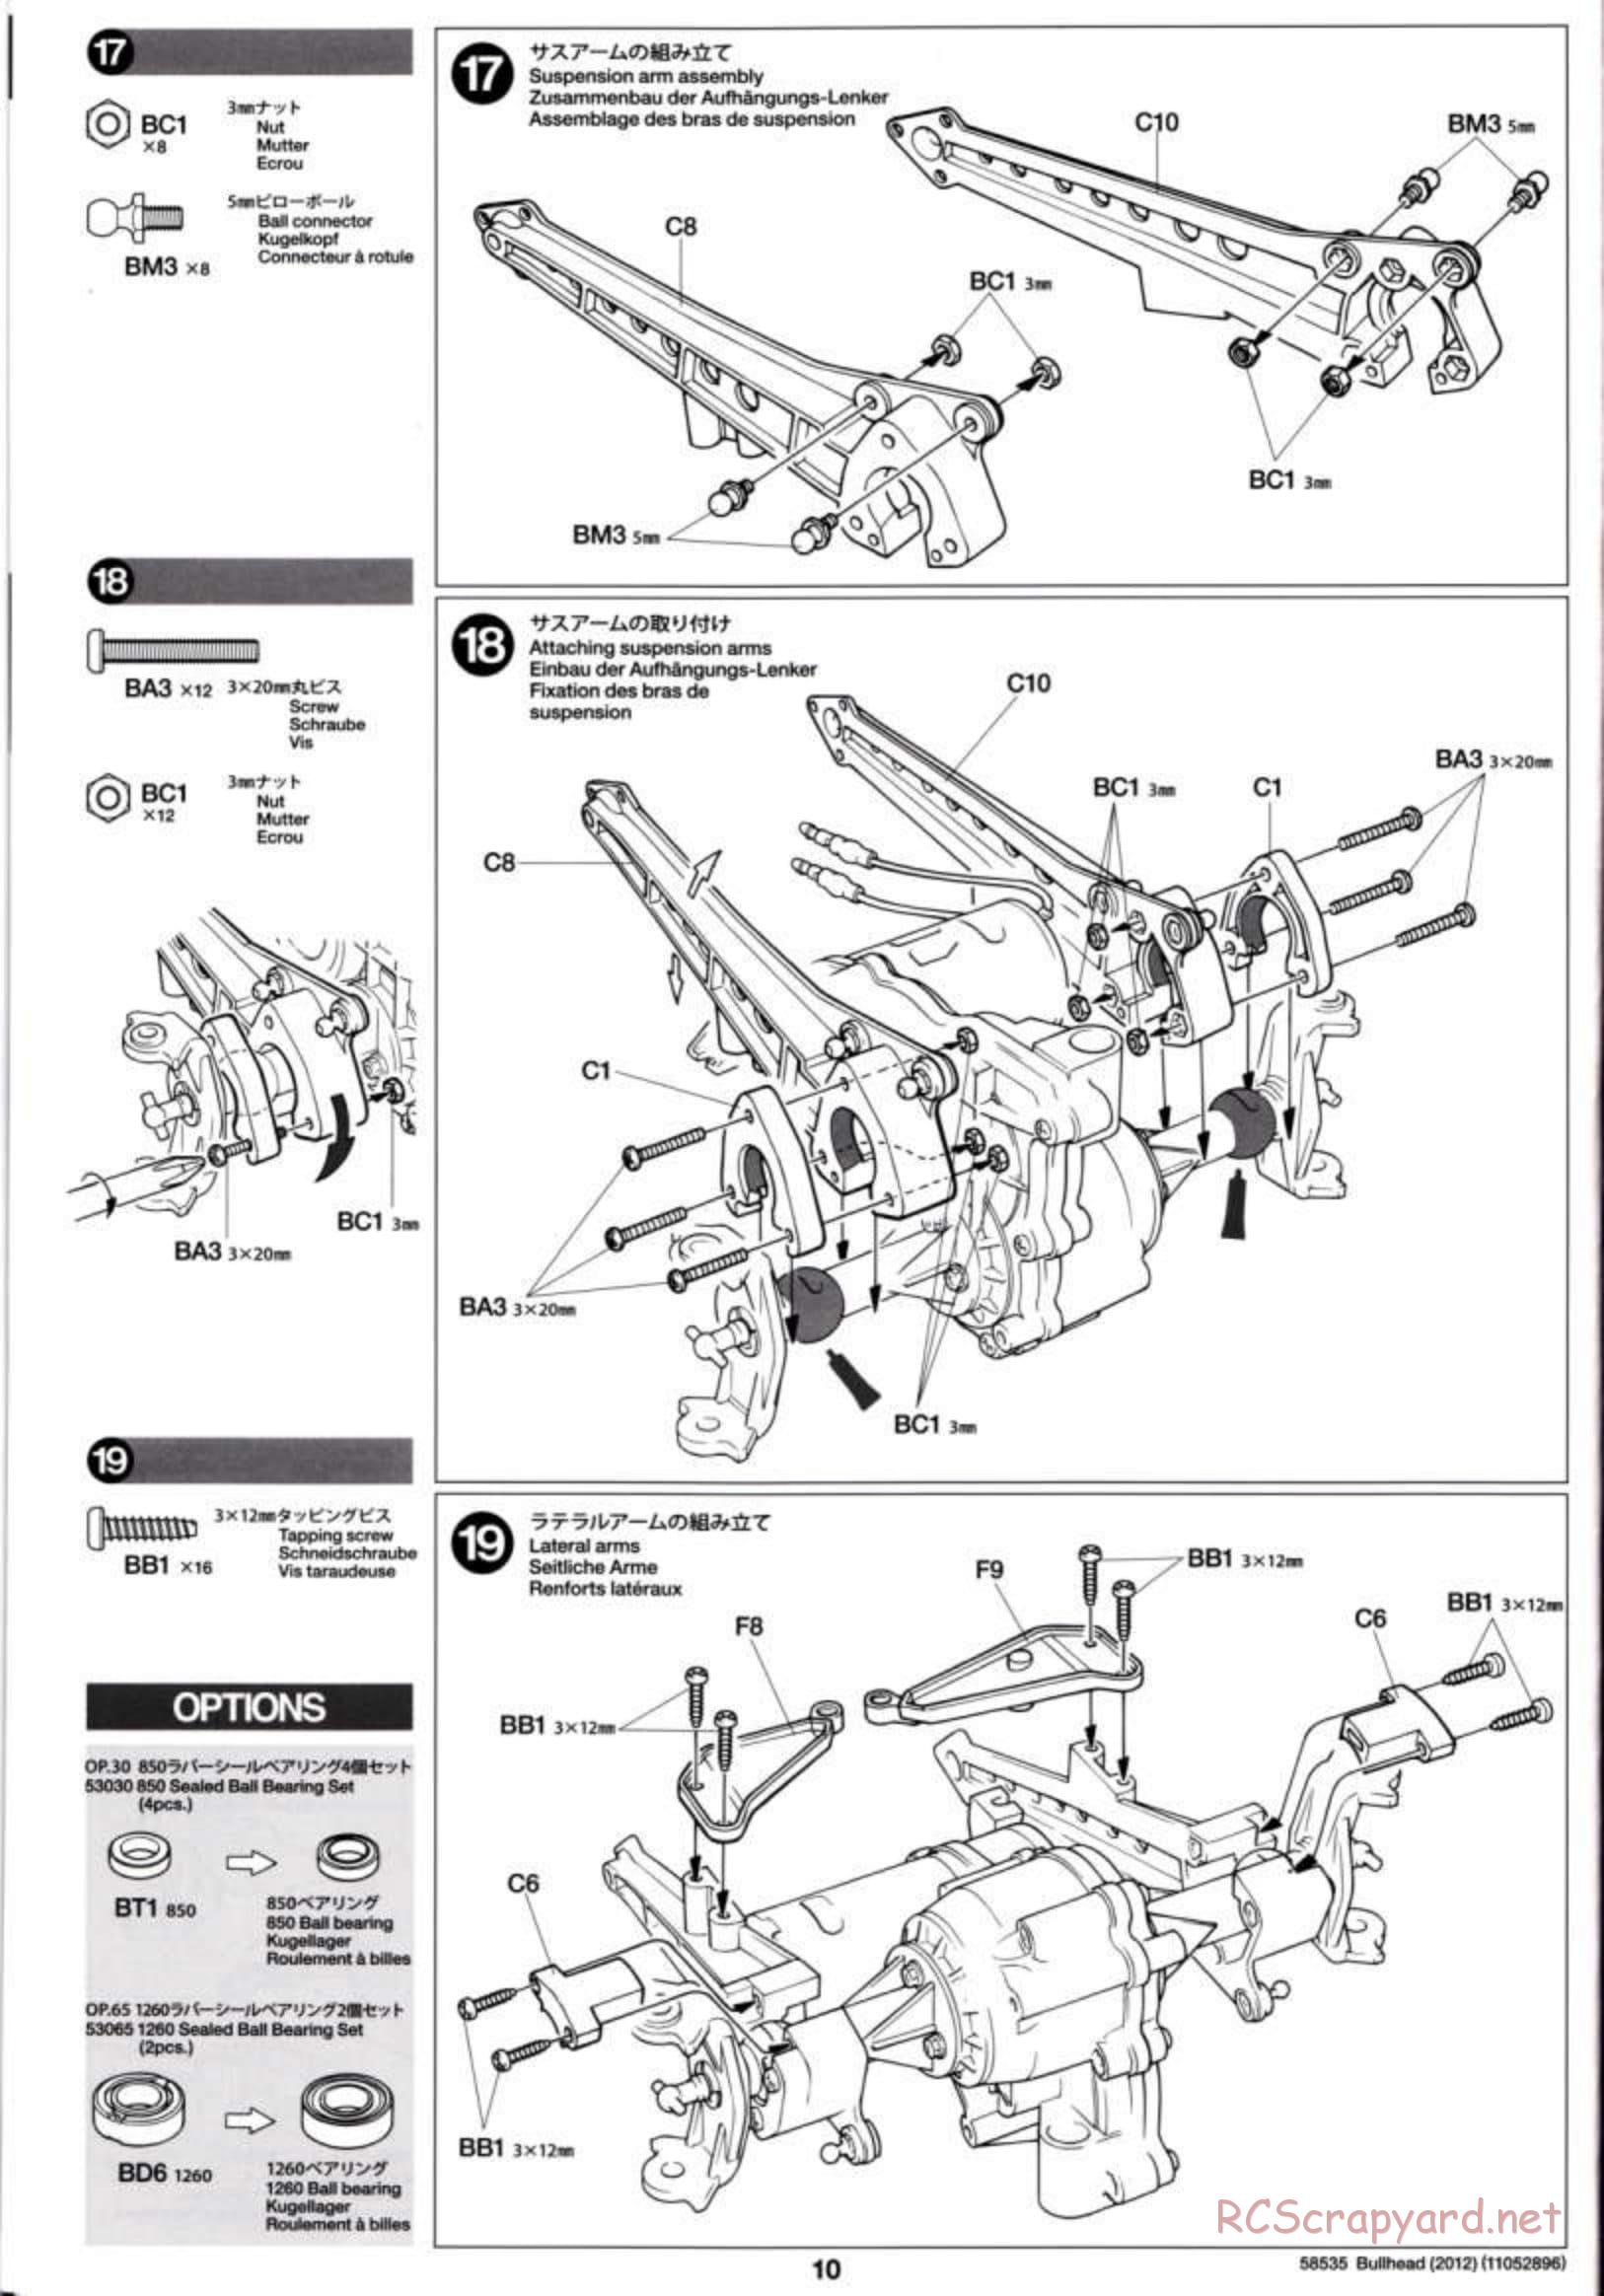 Tamiya - Bullhead 2012 - CB Chassis - Manual - Page 10